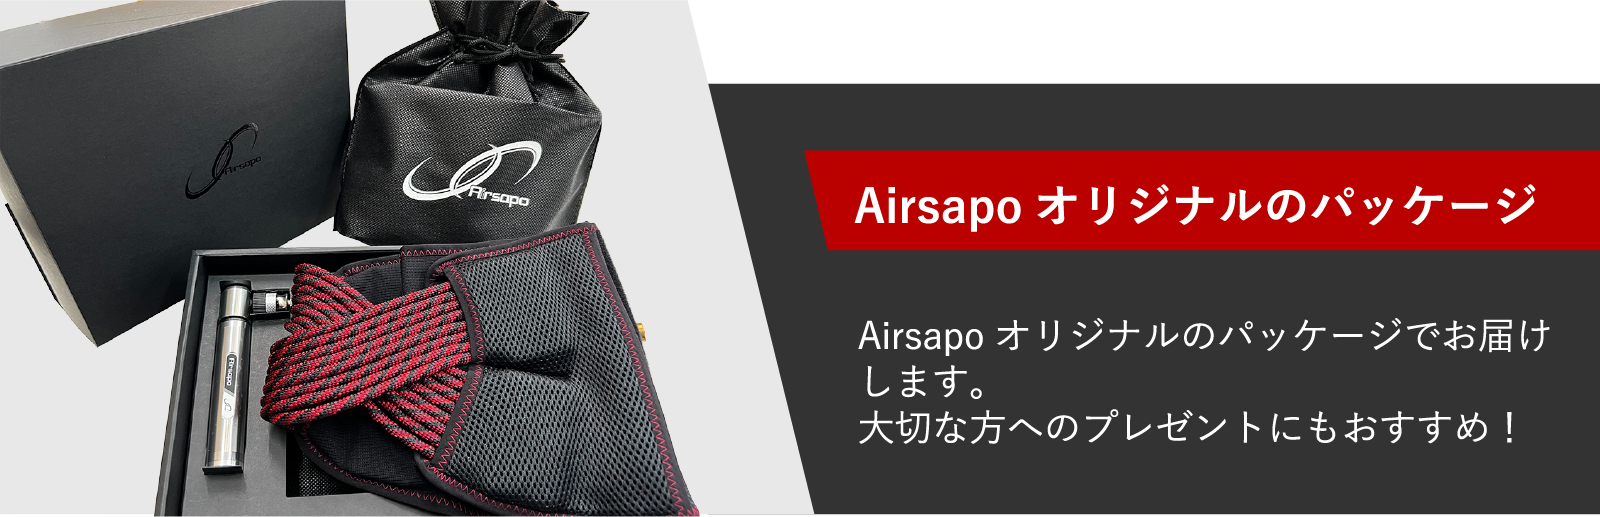 Airsapoオリジナルのパッケージ